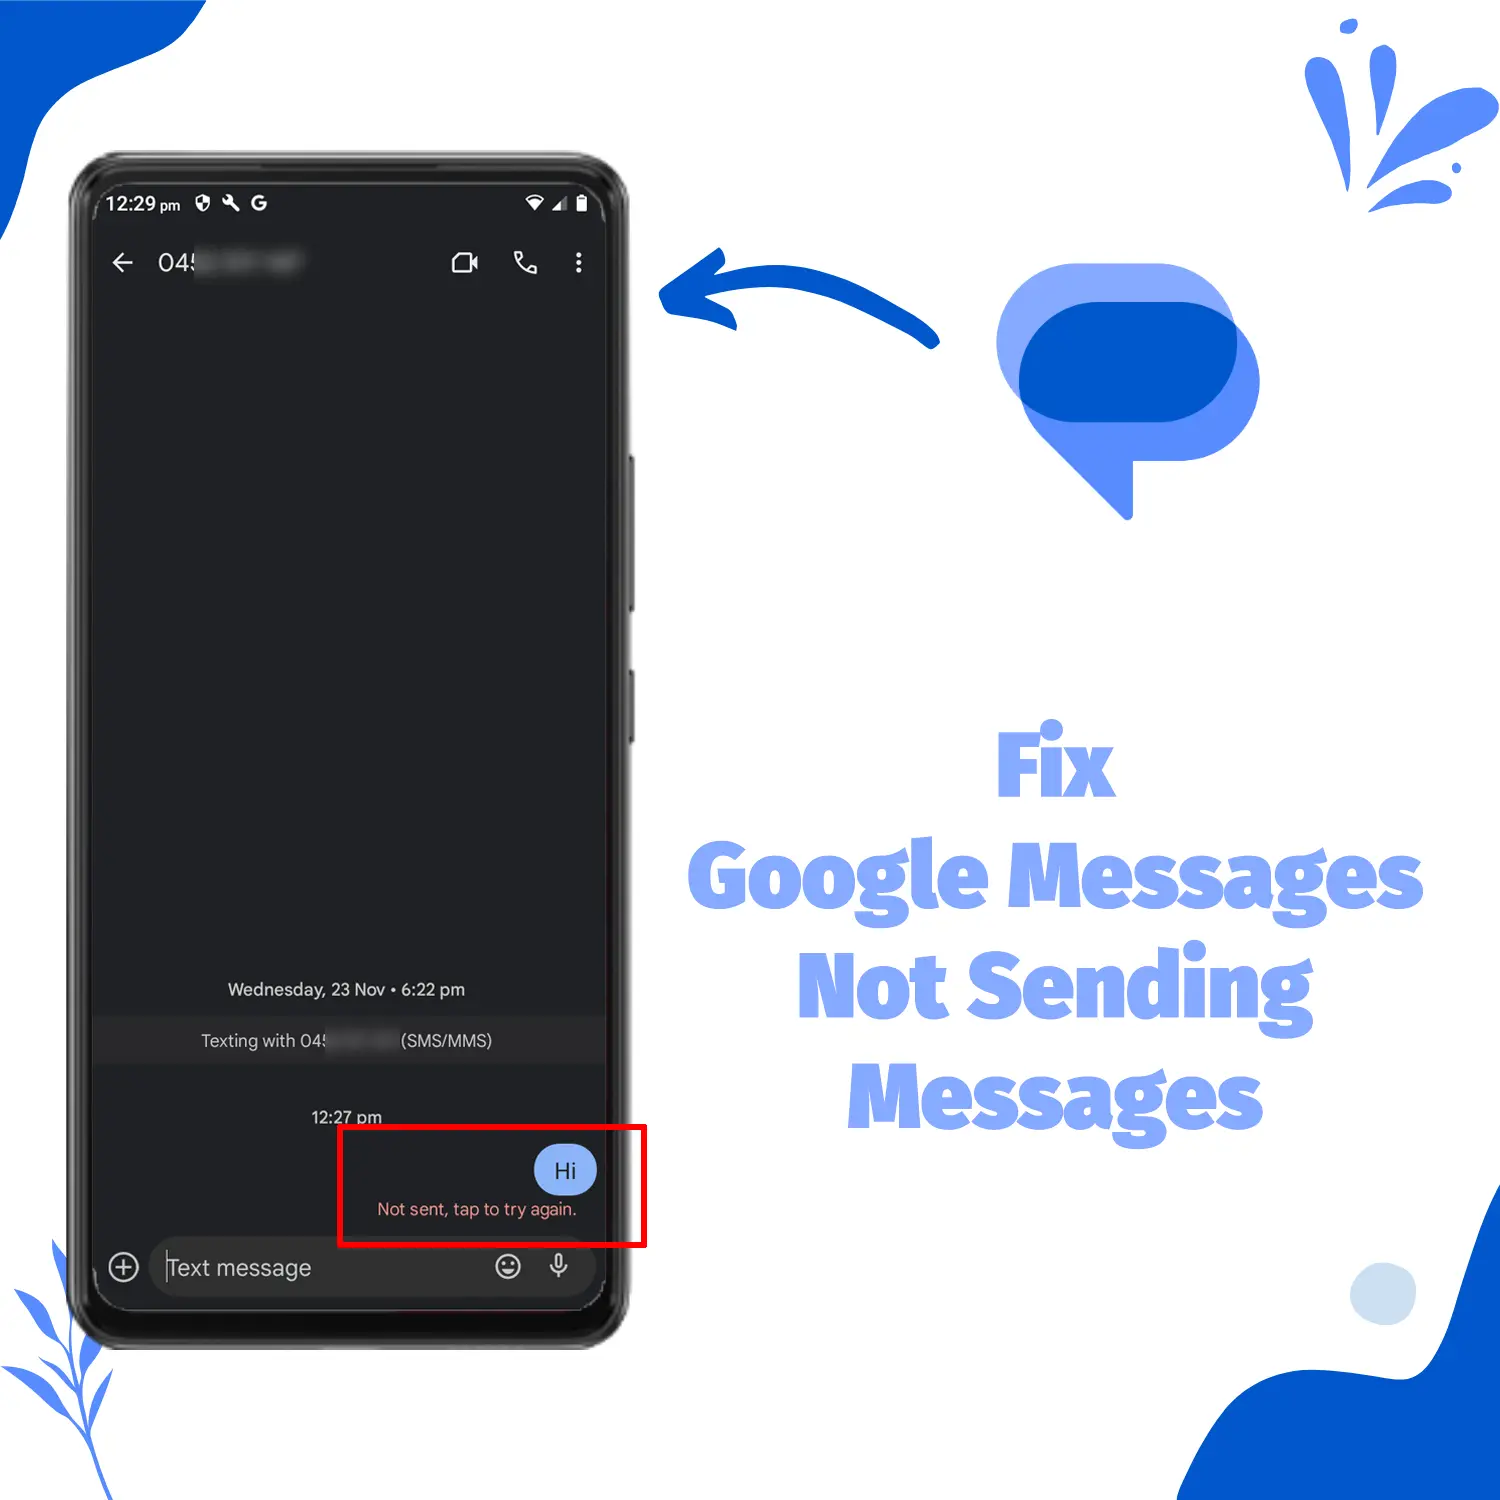 Fix Google Messages not Sending Messages